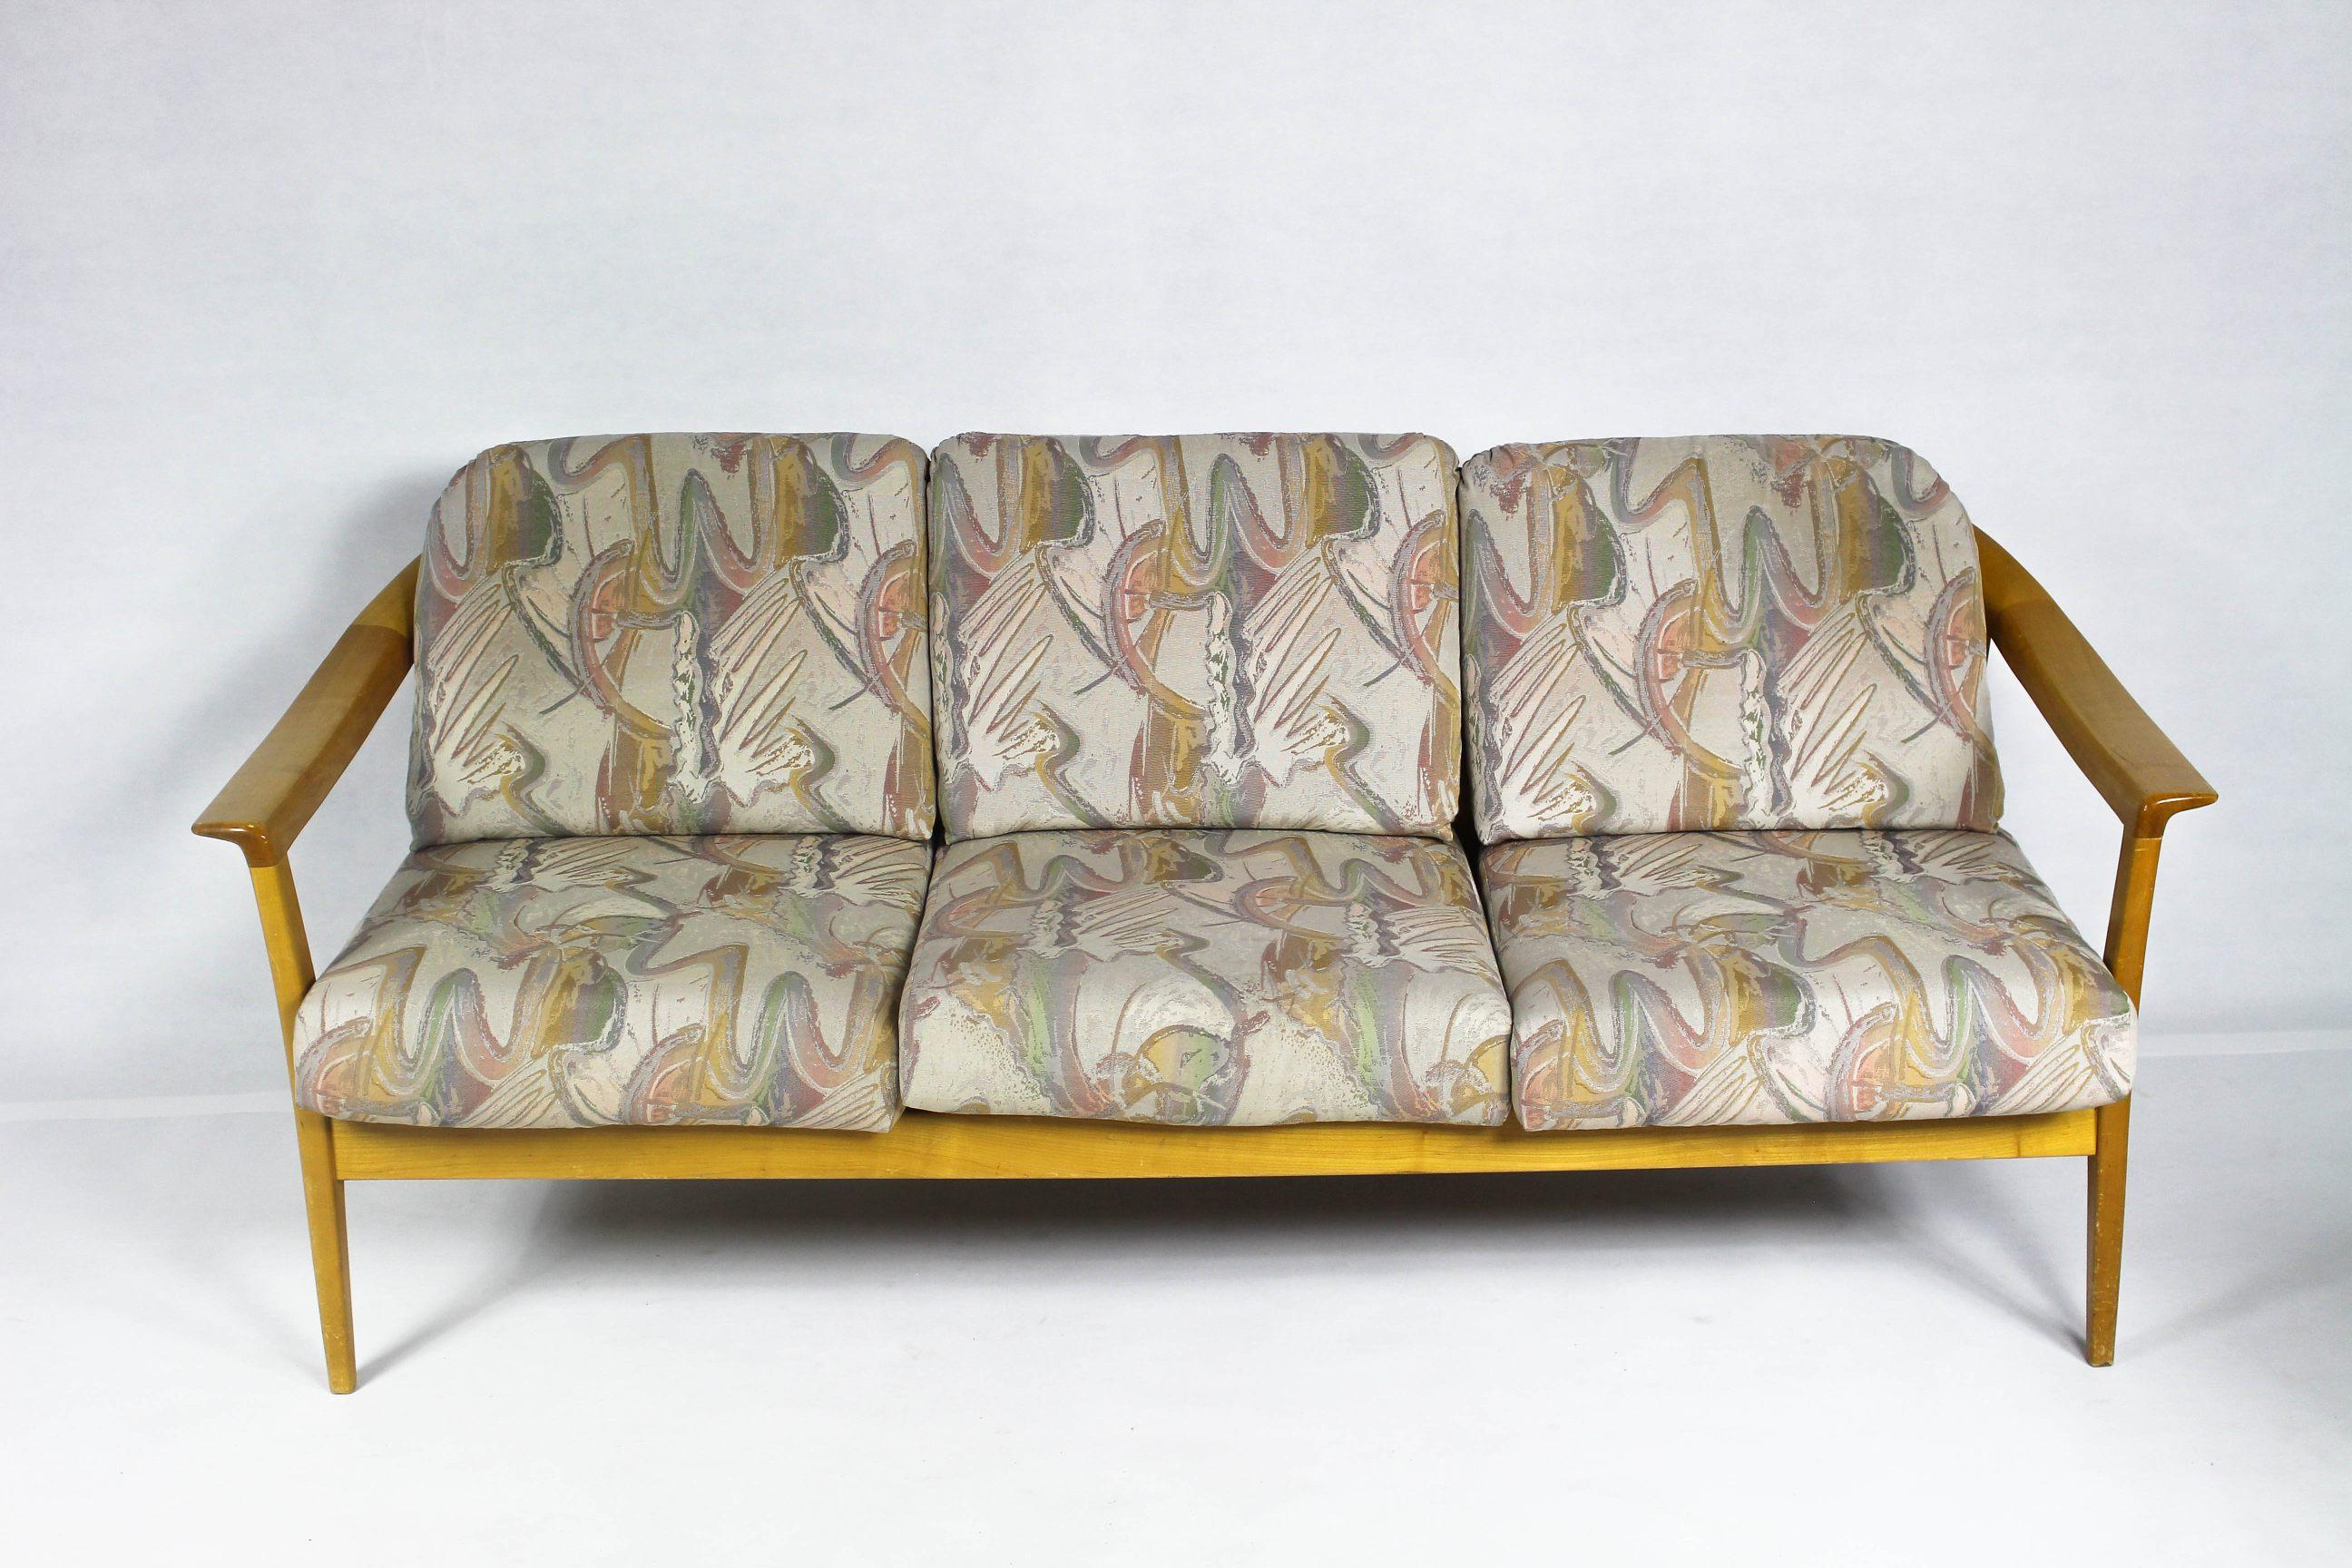 Vintage Sofa aus Sherryholz, hergestellt von Wilhelm Knoll.
Das Sofa hat eine gute Struktur und formschöne Armlehnen.
Erhältlich auch 2 Stühle.